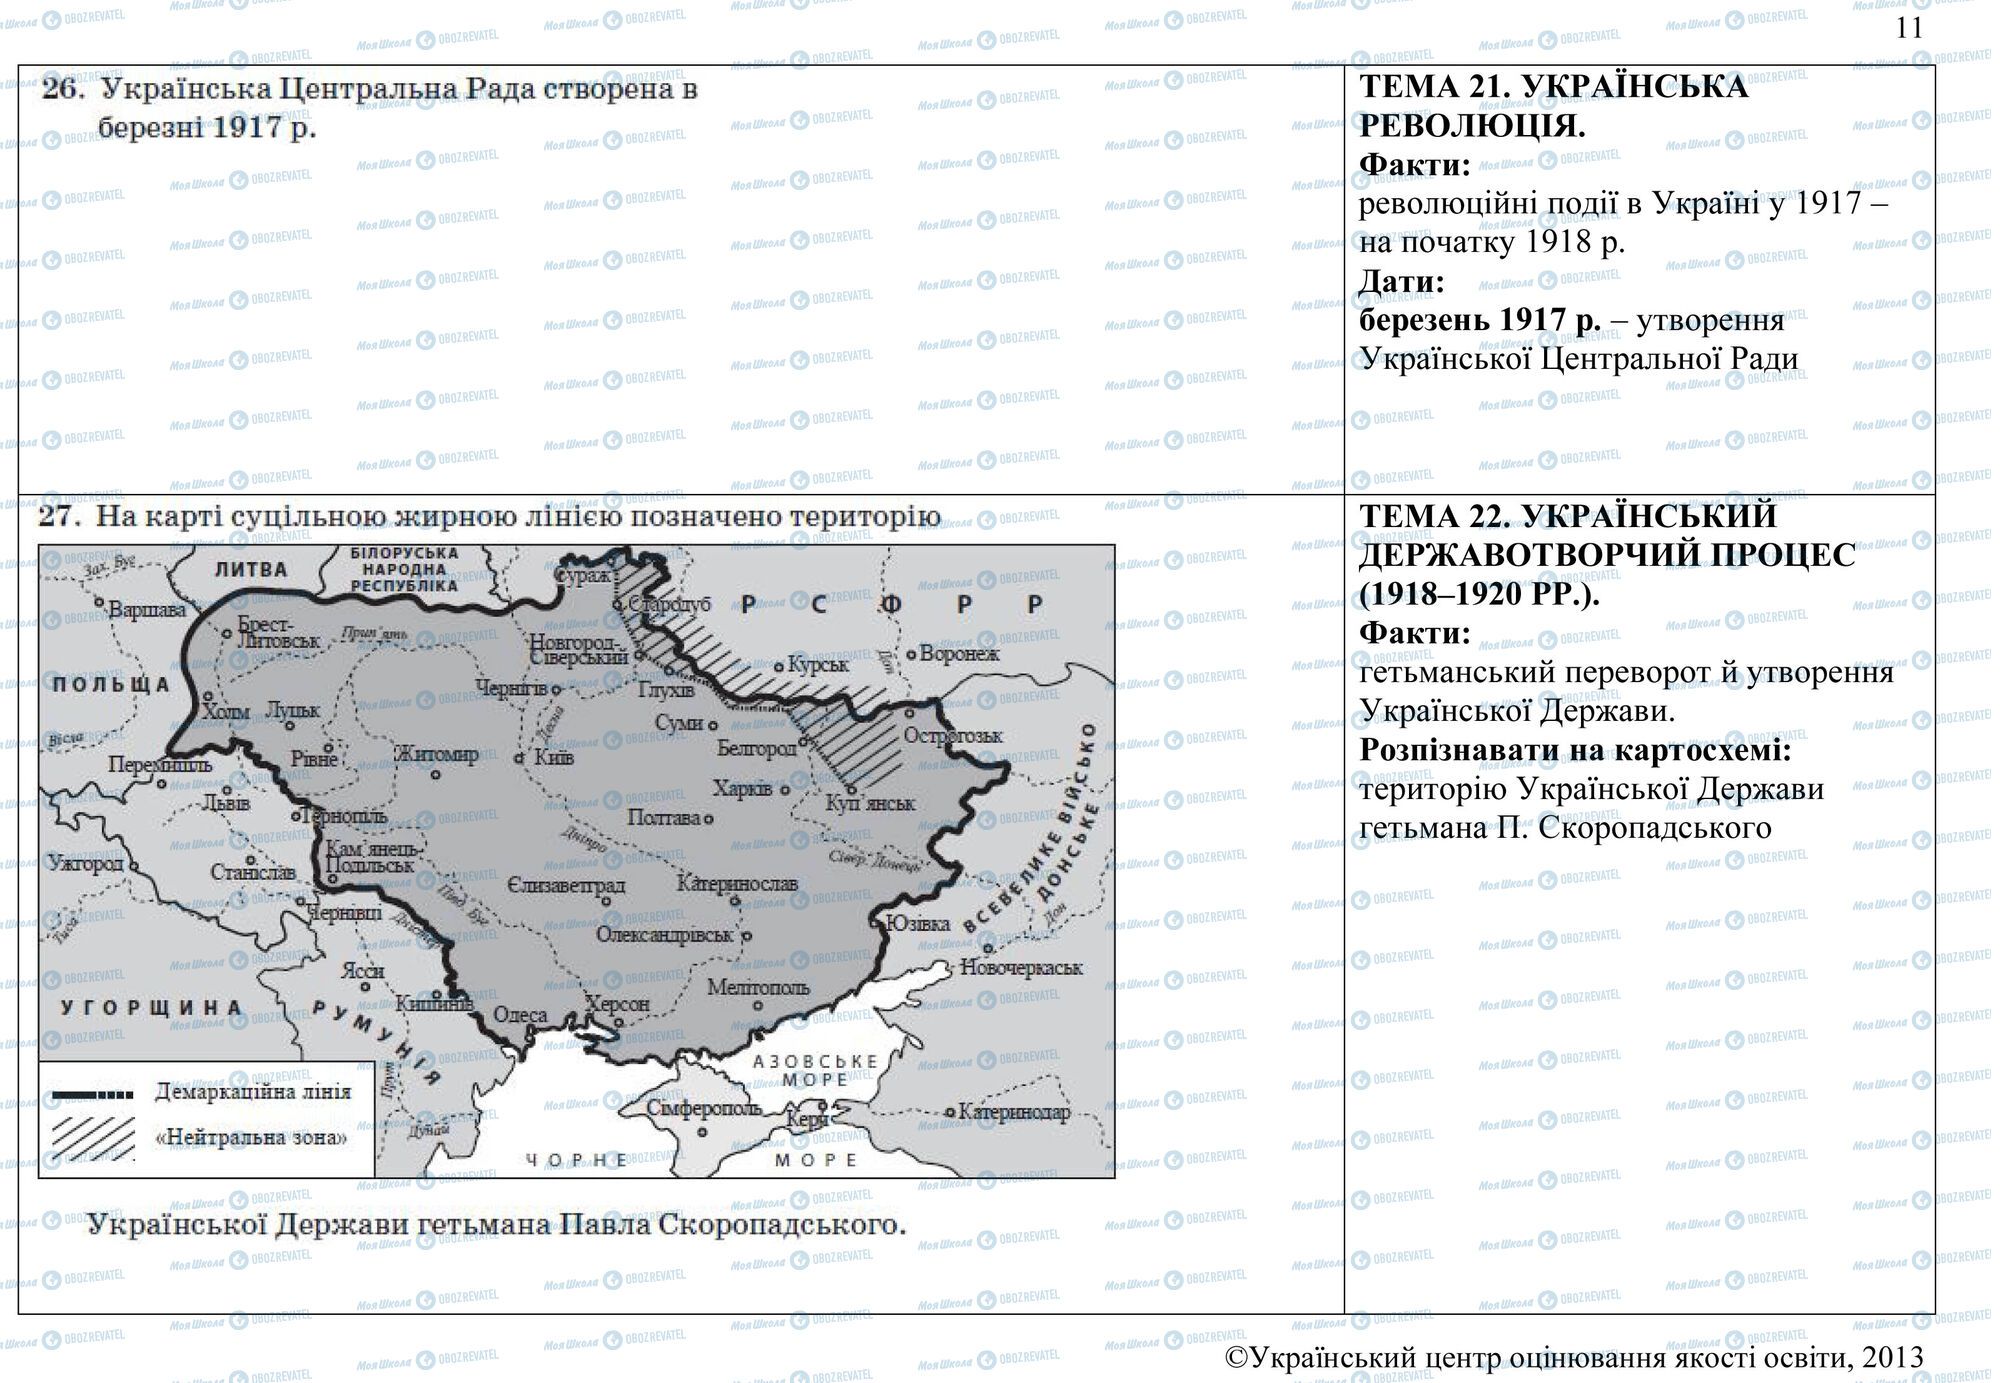 ЗНО История Украины 11 класс страница 26-27